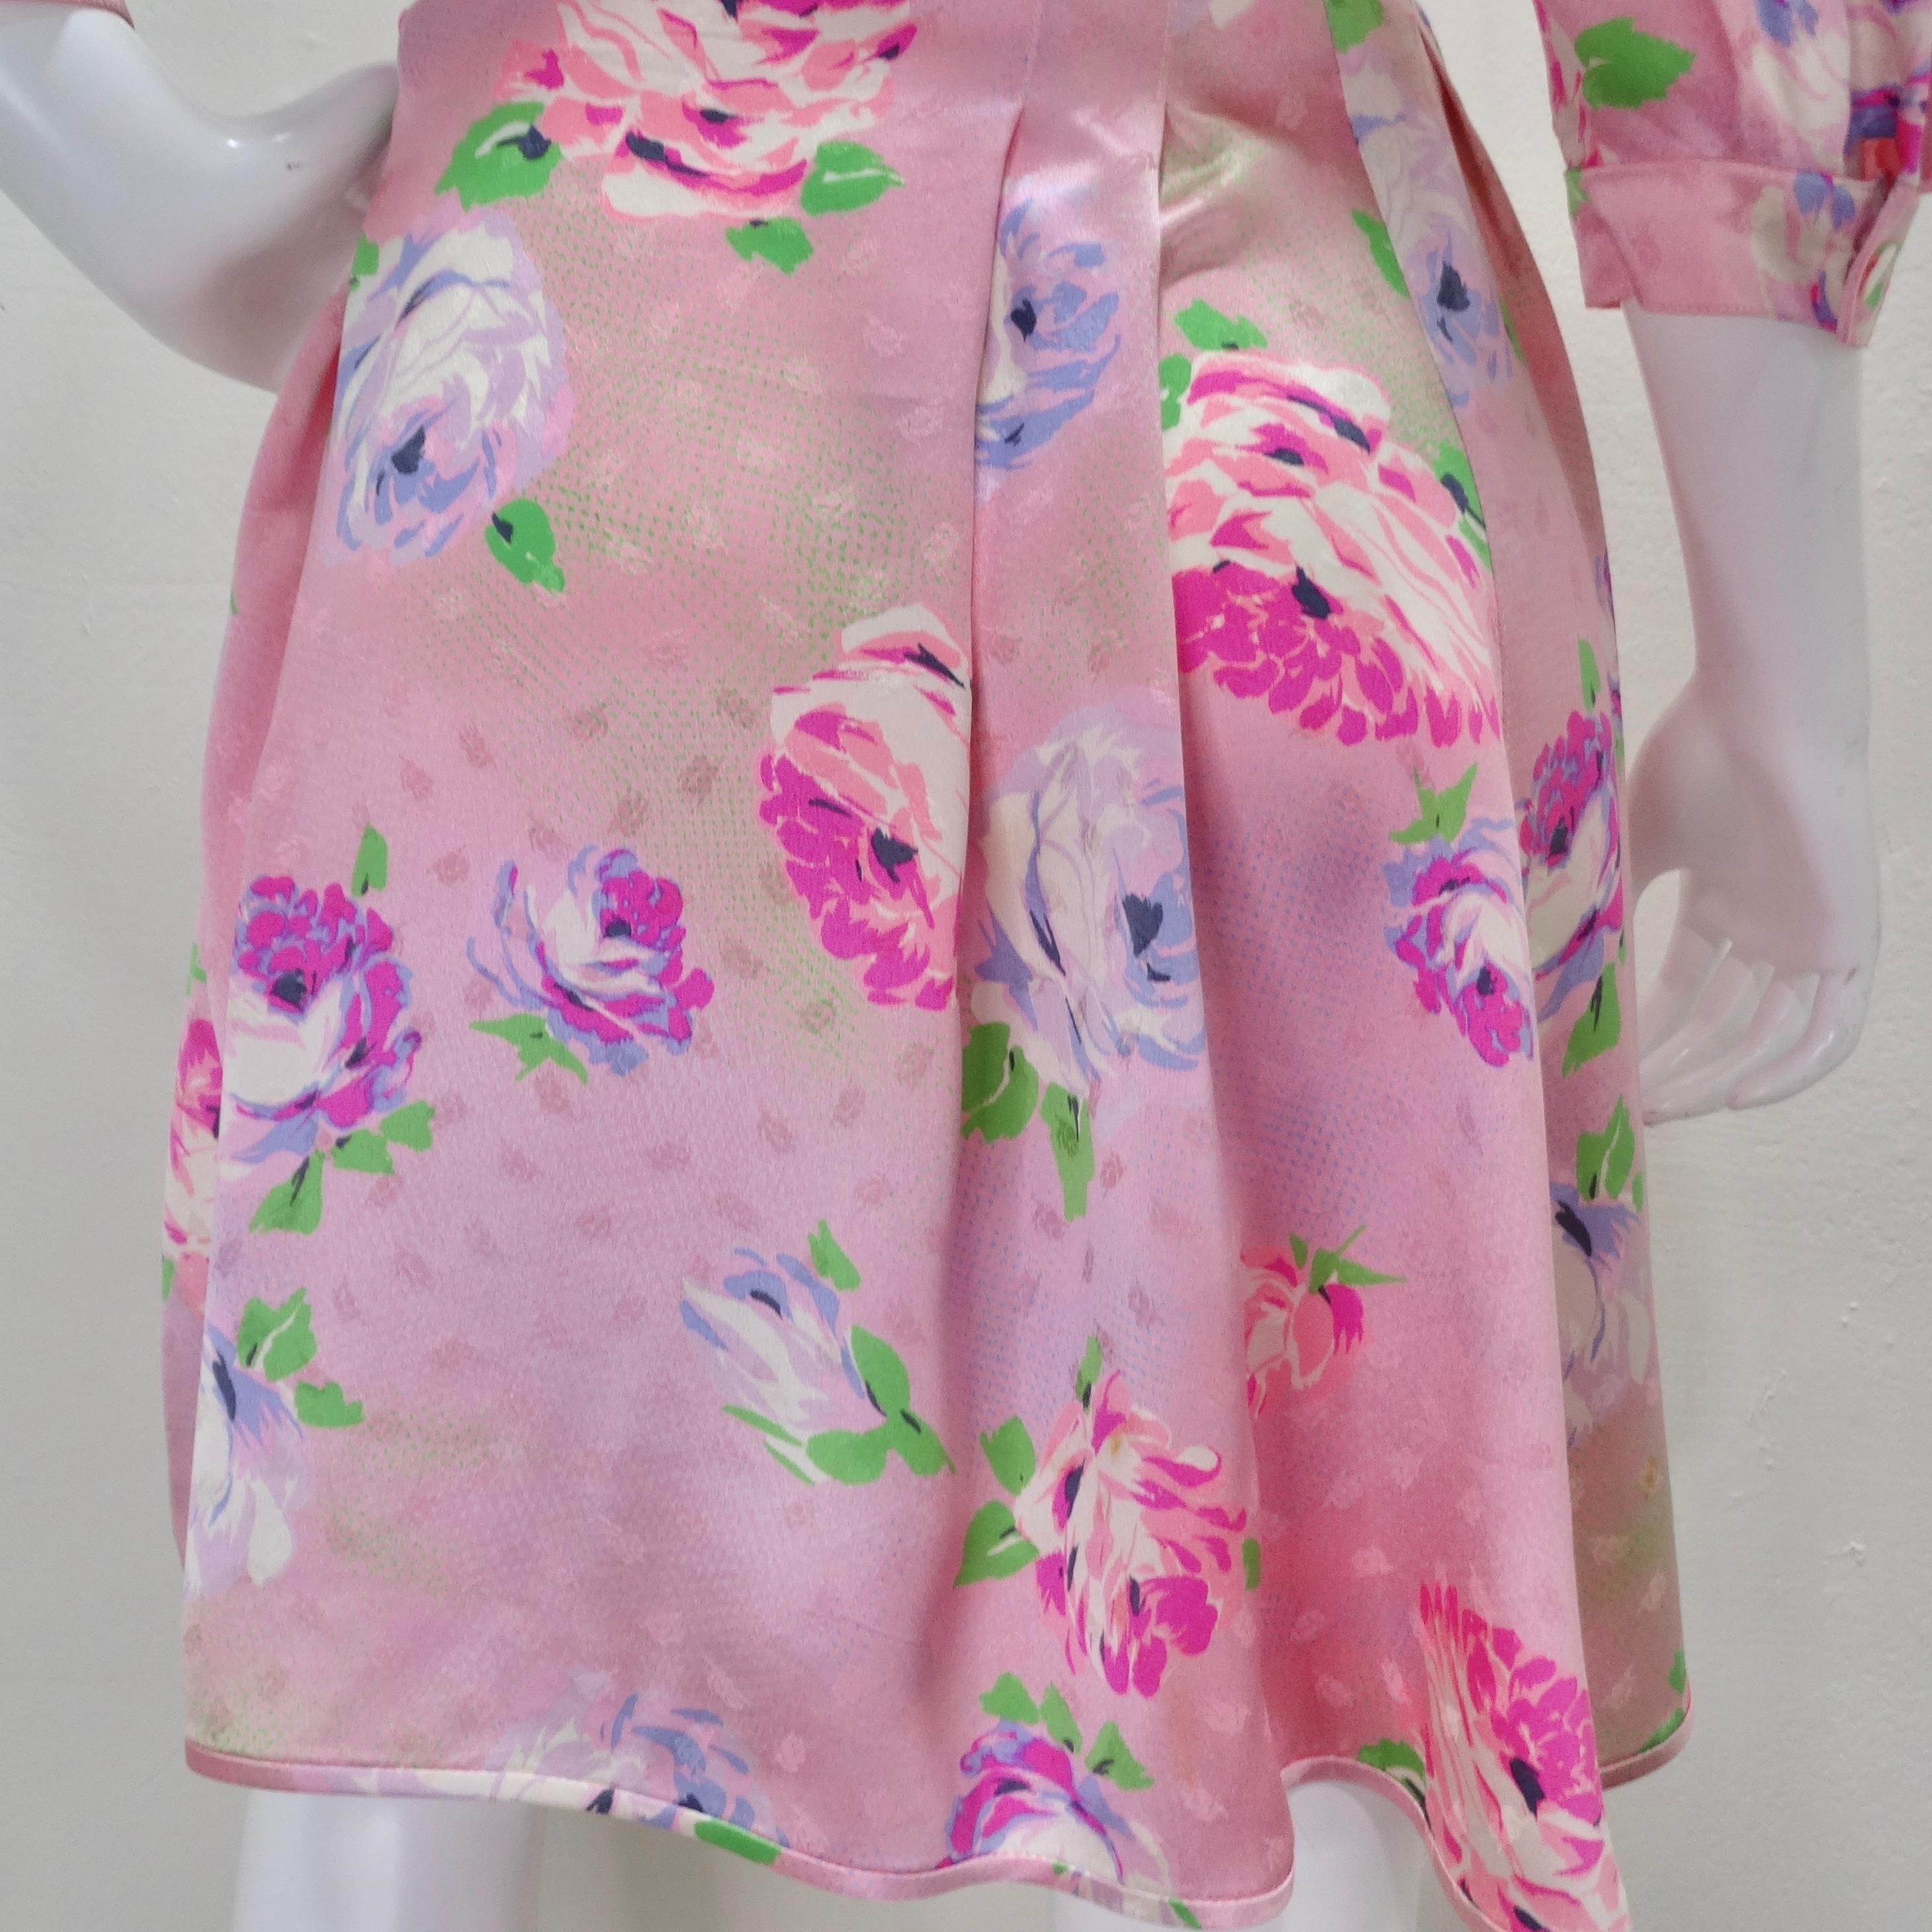 Emanuel Ungaro 1980s Pink Floral Wrap Dress For Sale 1